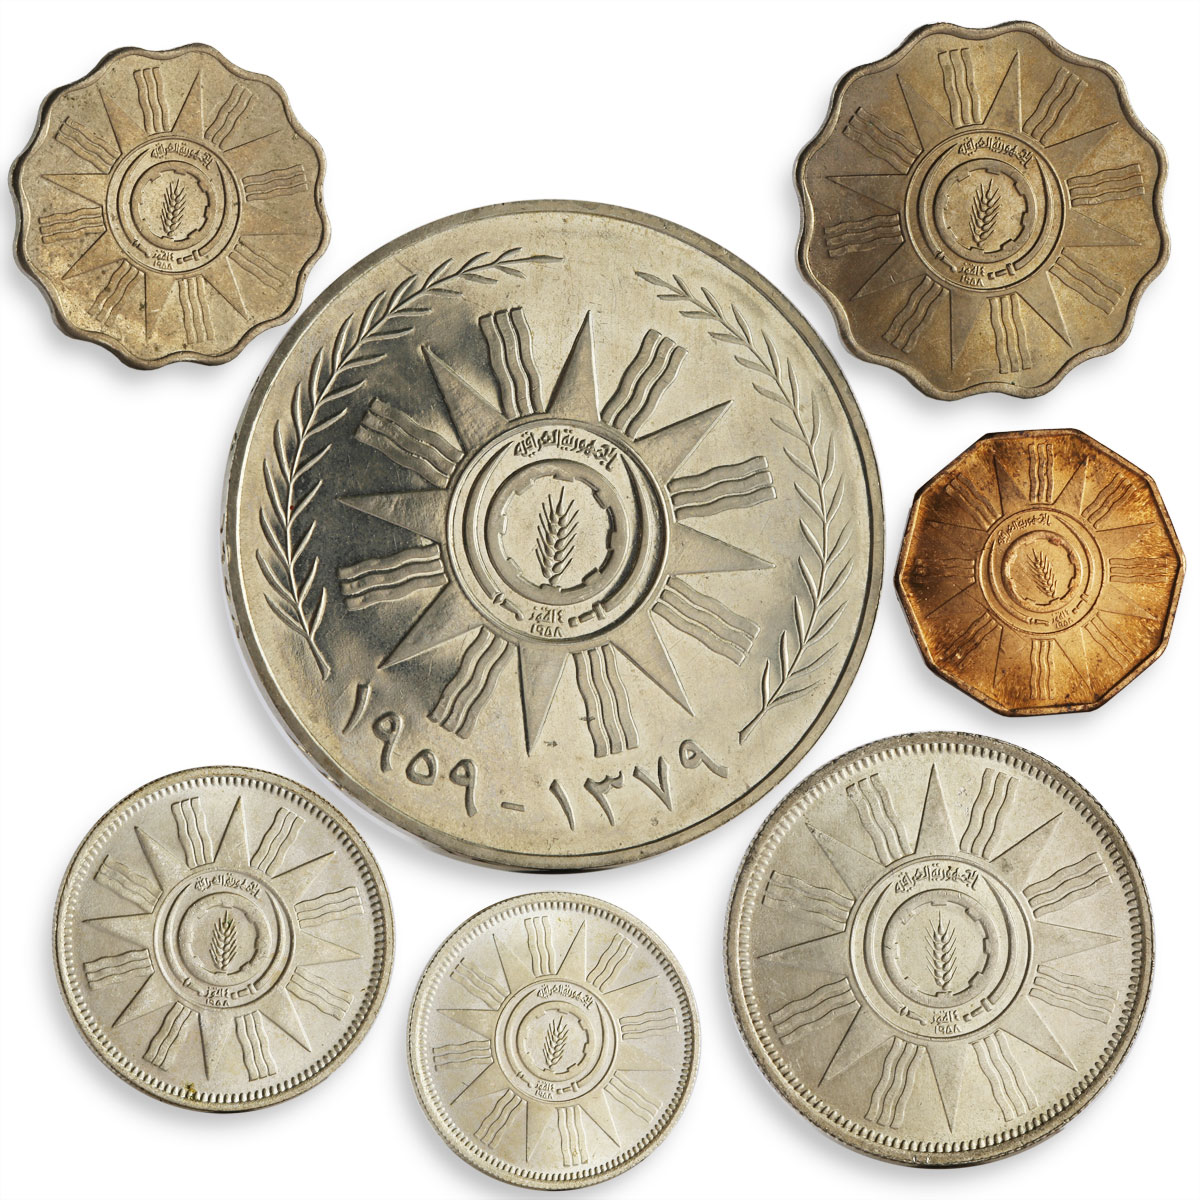 Iraq set of 7 coins BU 1959